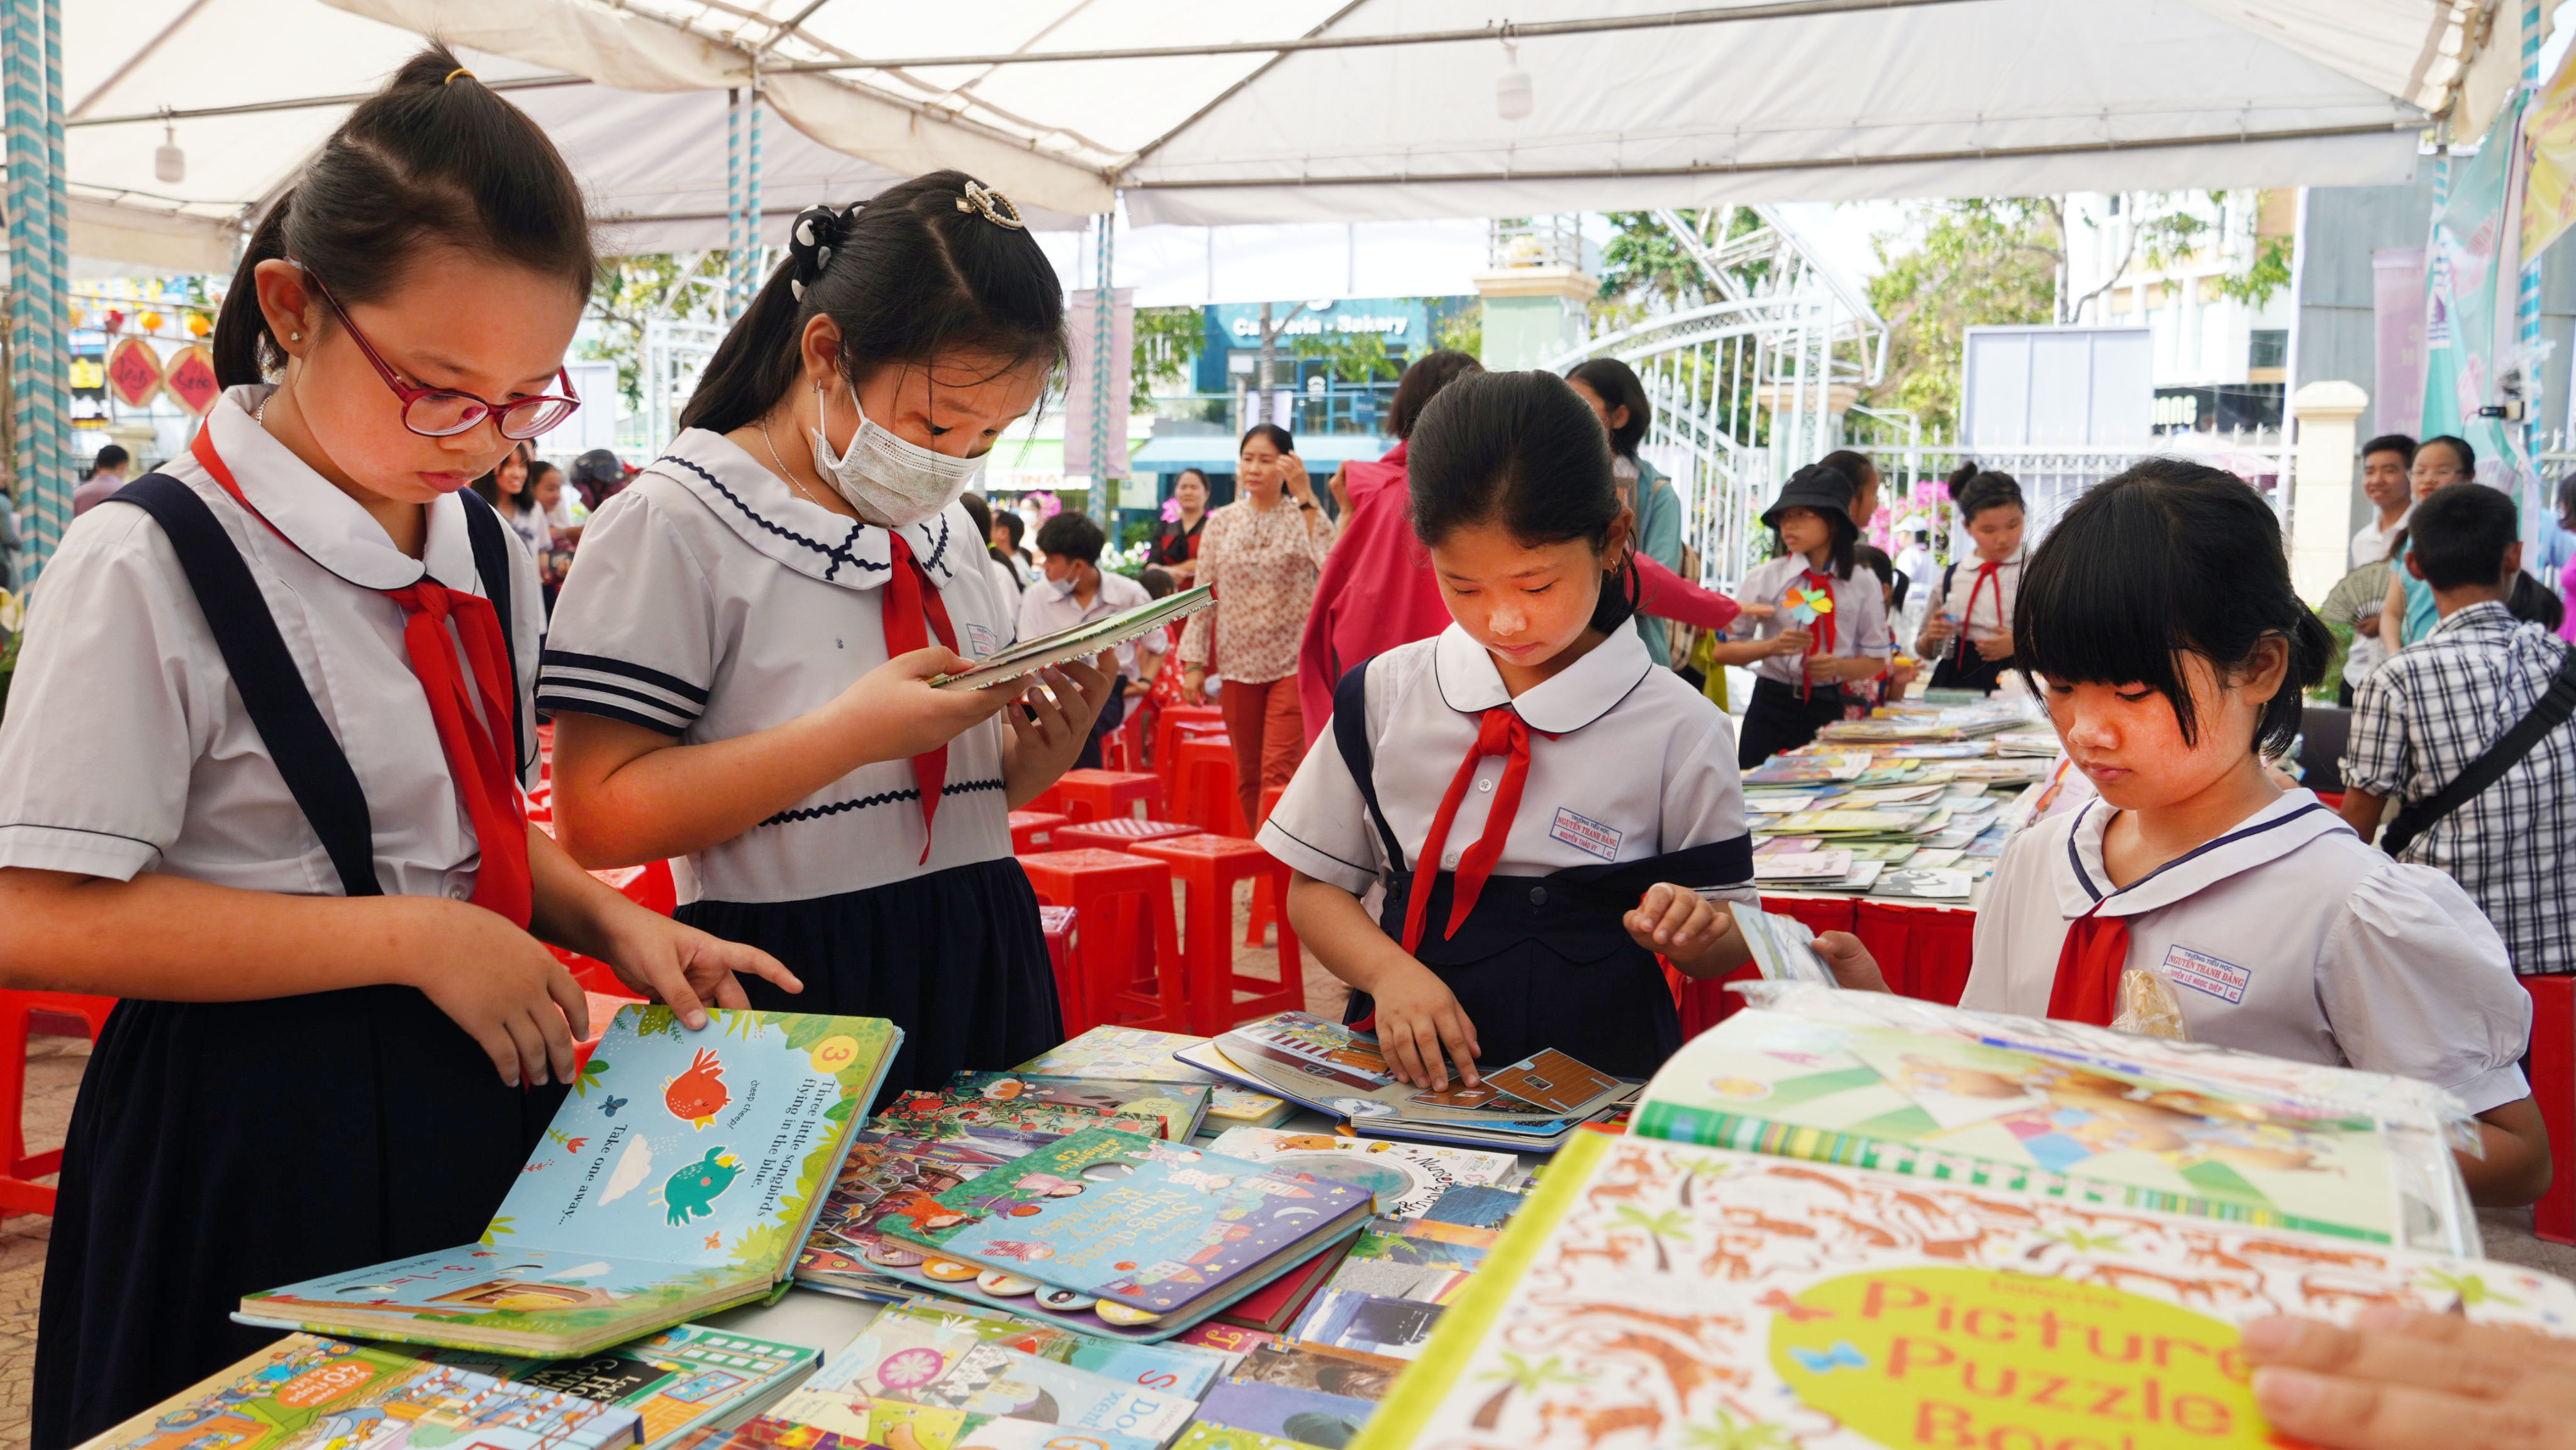 HS tham quan các gian hàng sách tại Ngày sách và văn hóa đọc Việt Nam tỉnh BR-VT lần thứ VIII do Sở TT-TT phối hợp Sở VH-TT tổ chức tại công viên Lê Thành Duy (TP.Bà Rịa) trong 2 ngày (17 và 18/4).